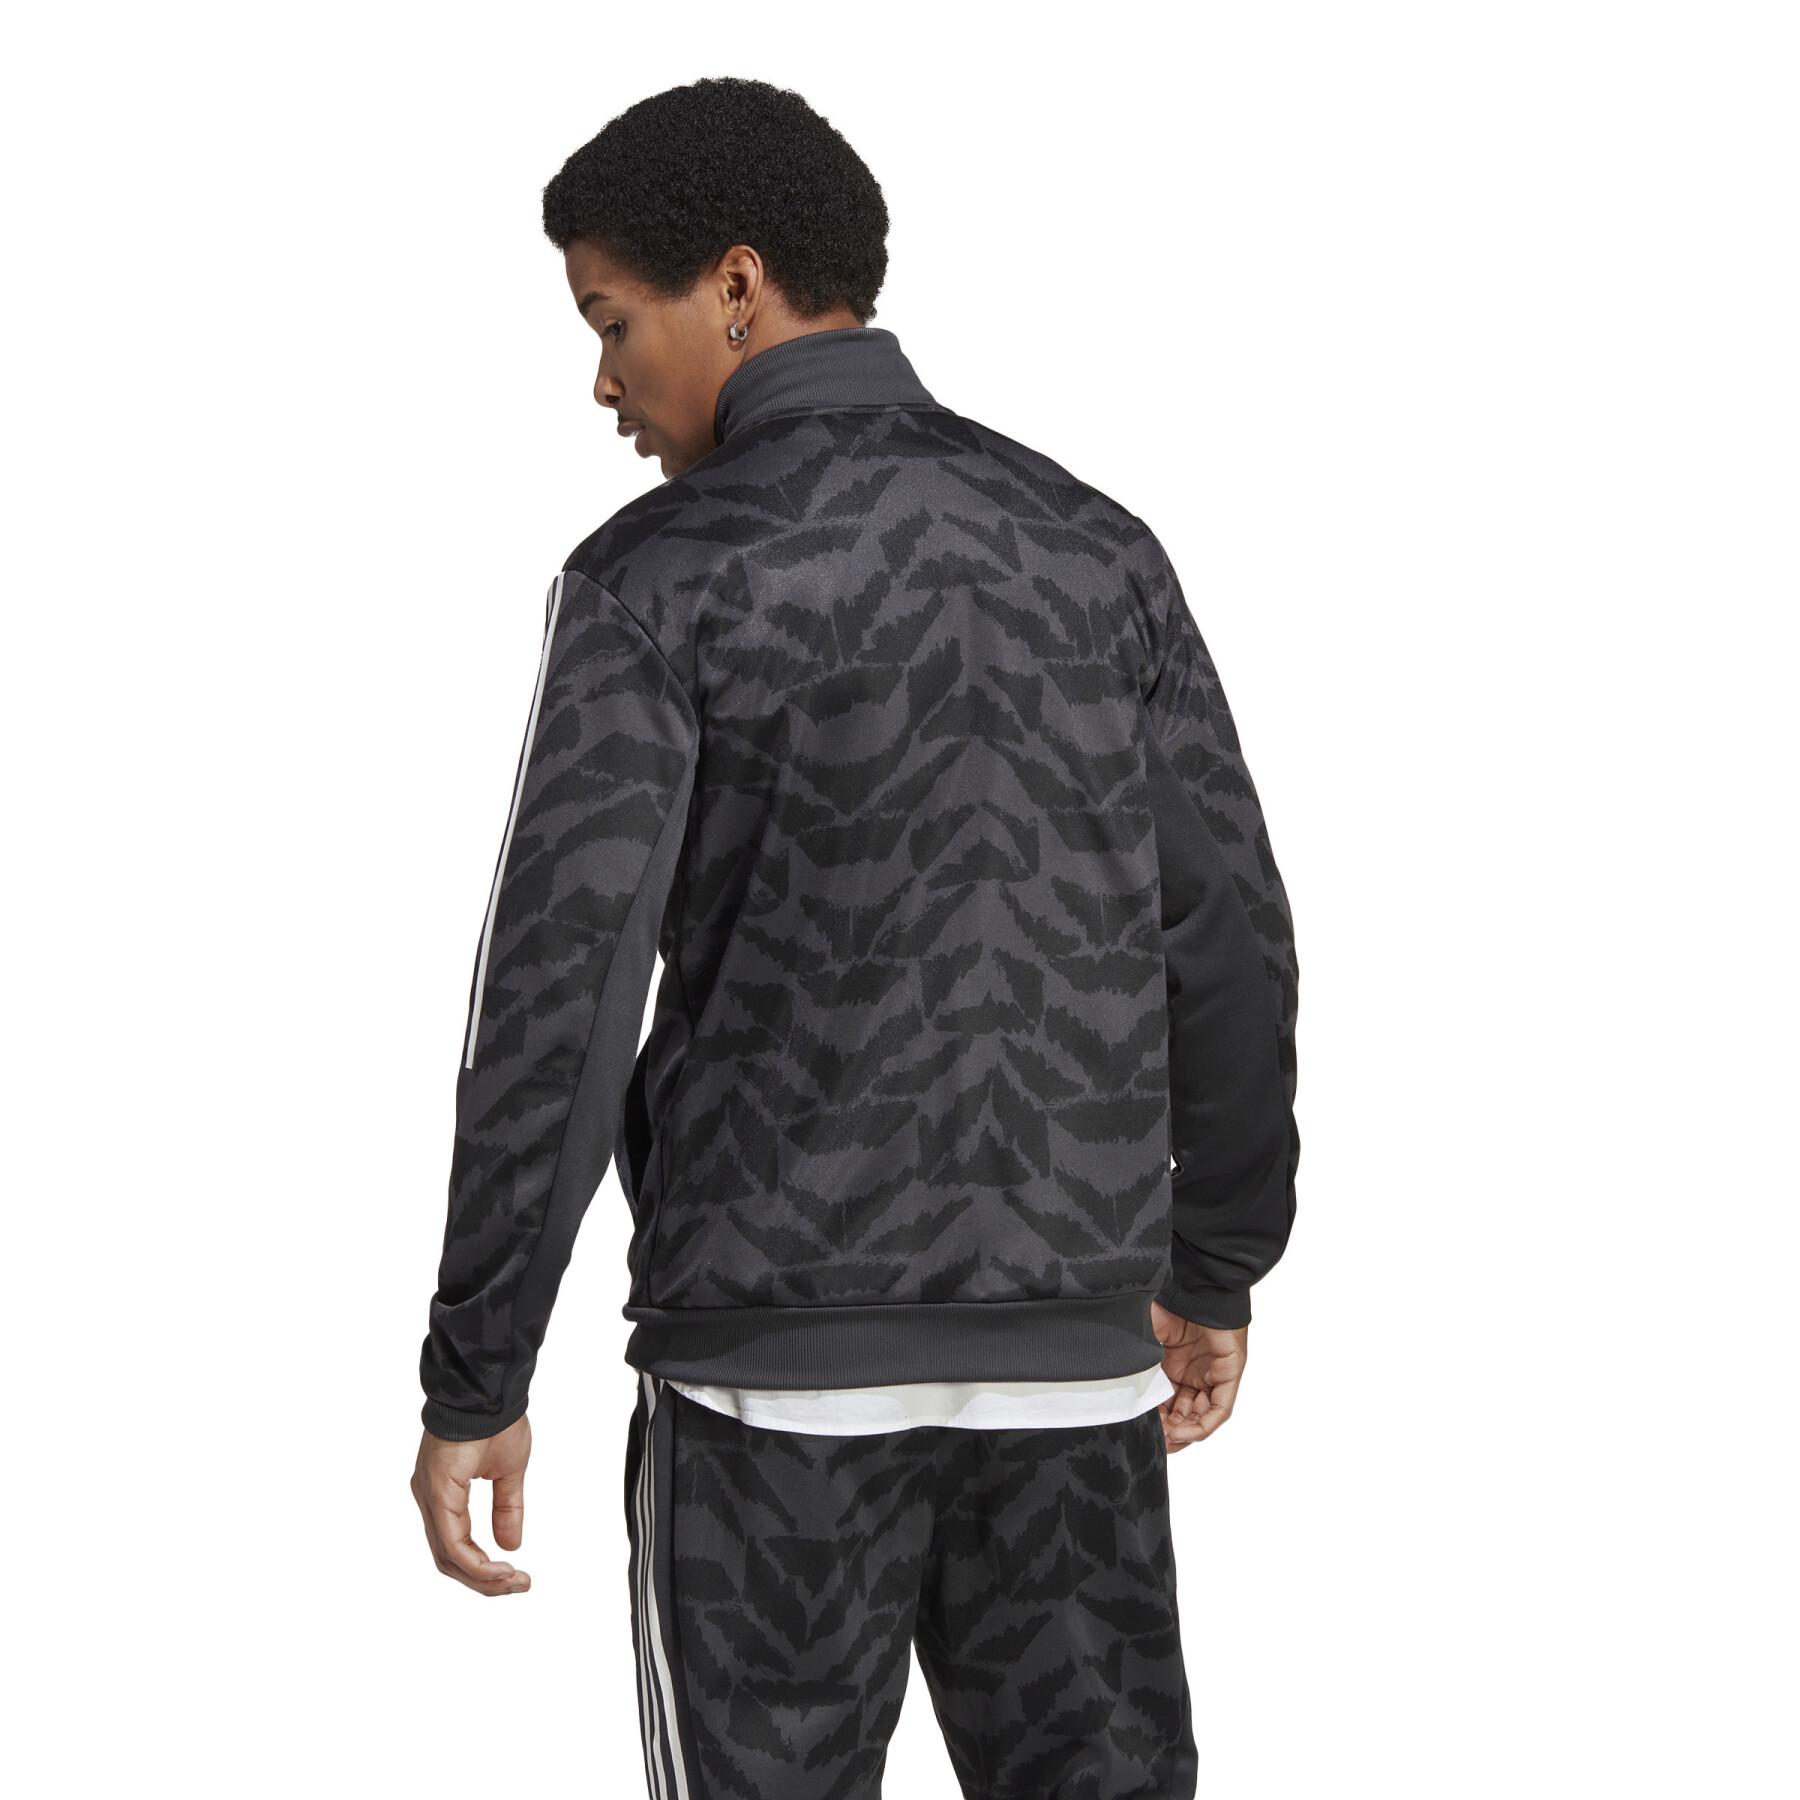 Sweat jacket adidas Tiro Suit-Up